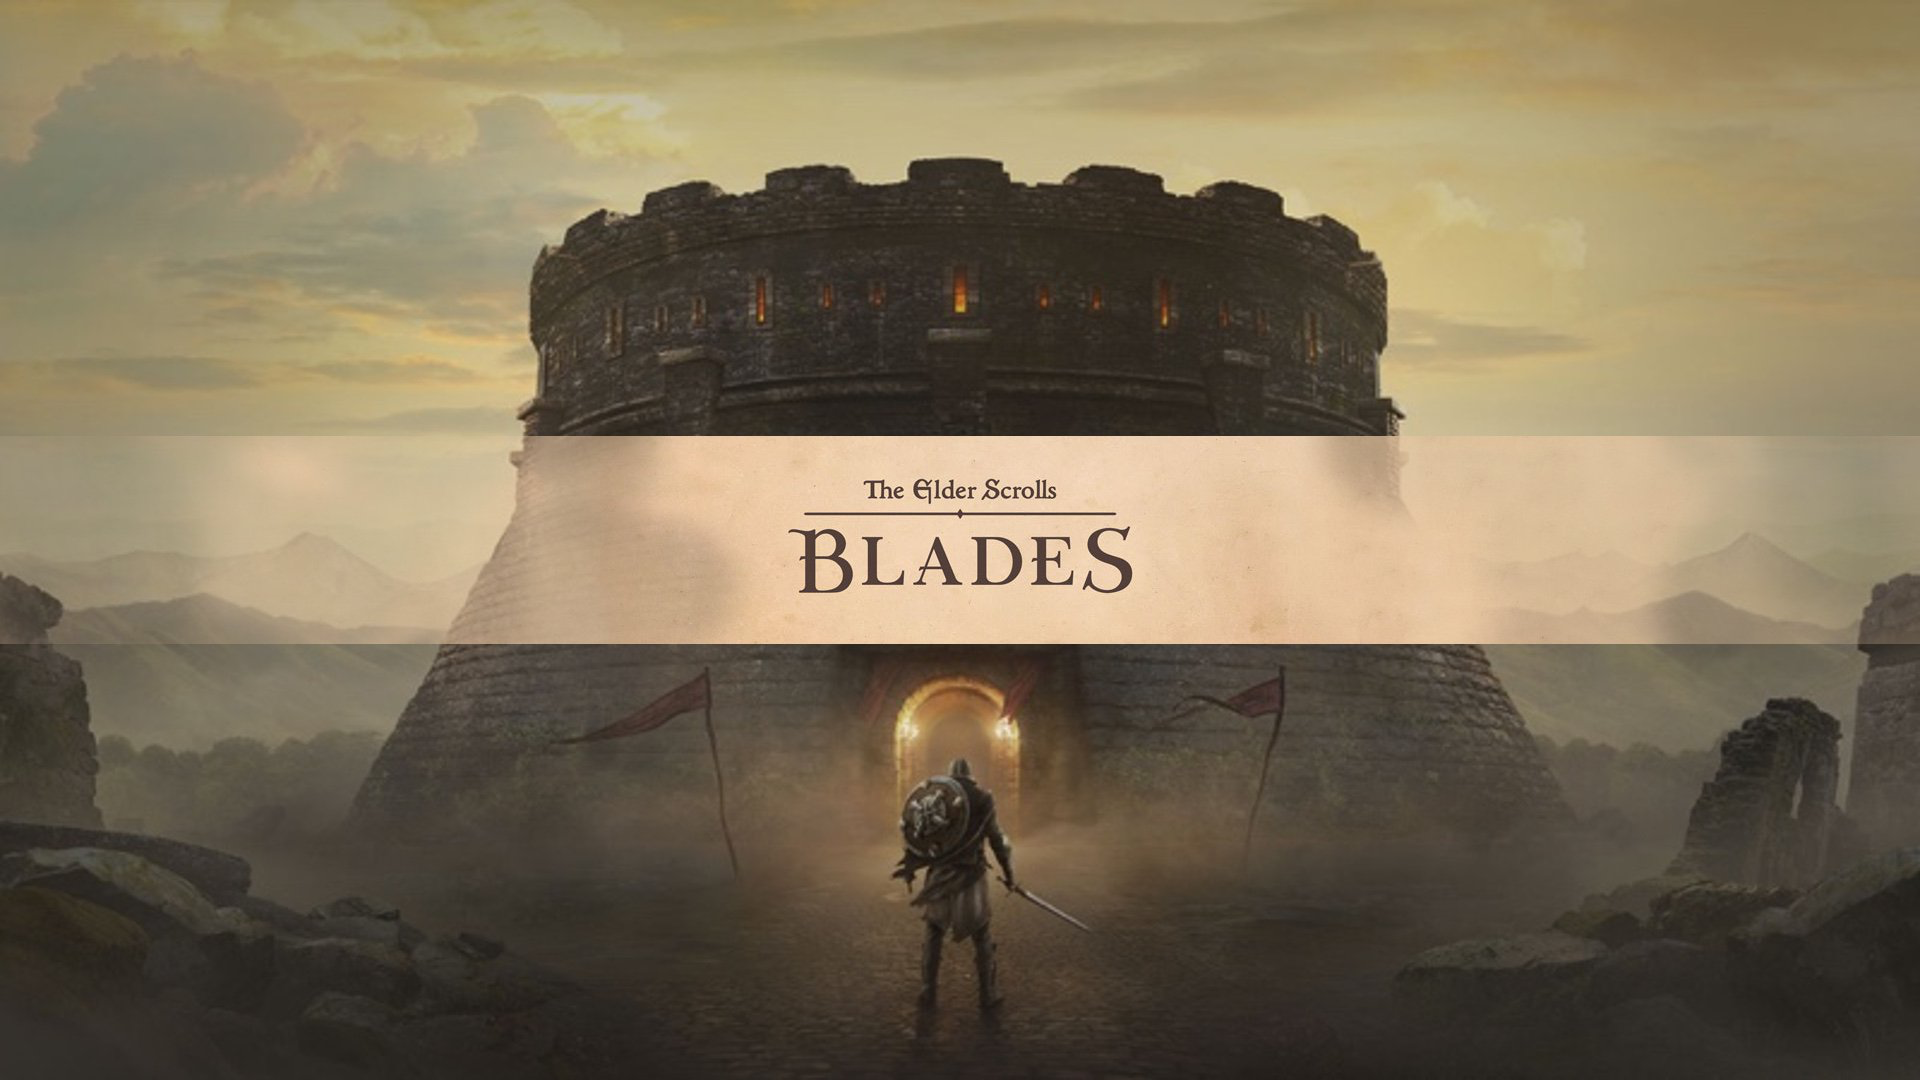 The Elder Scrolls Blades 1080p